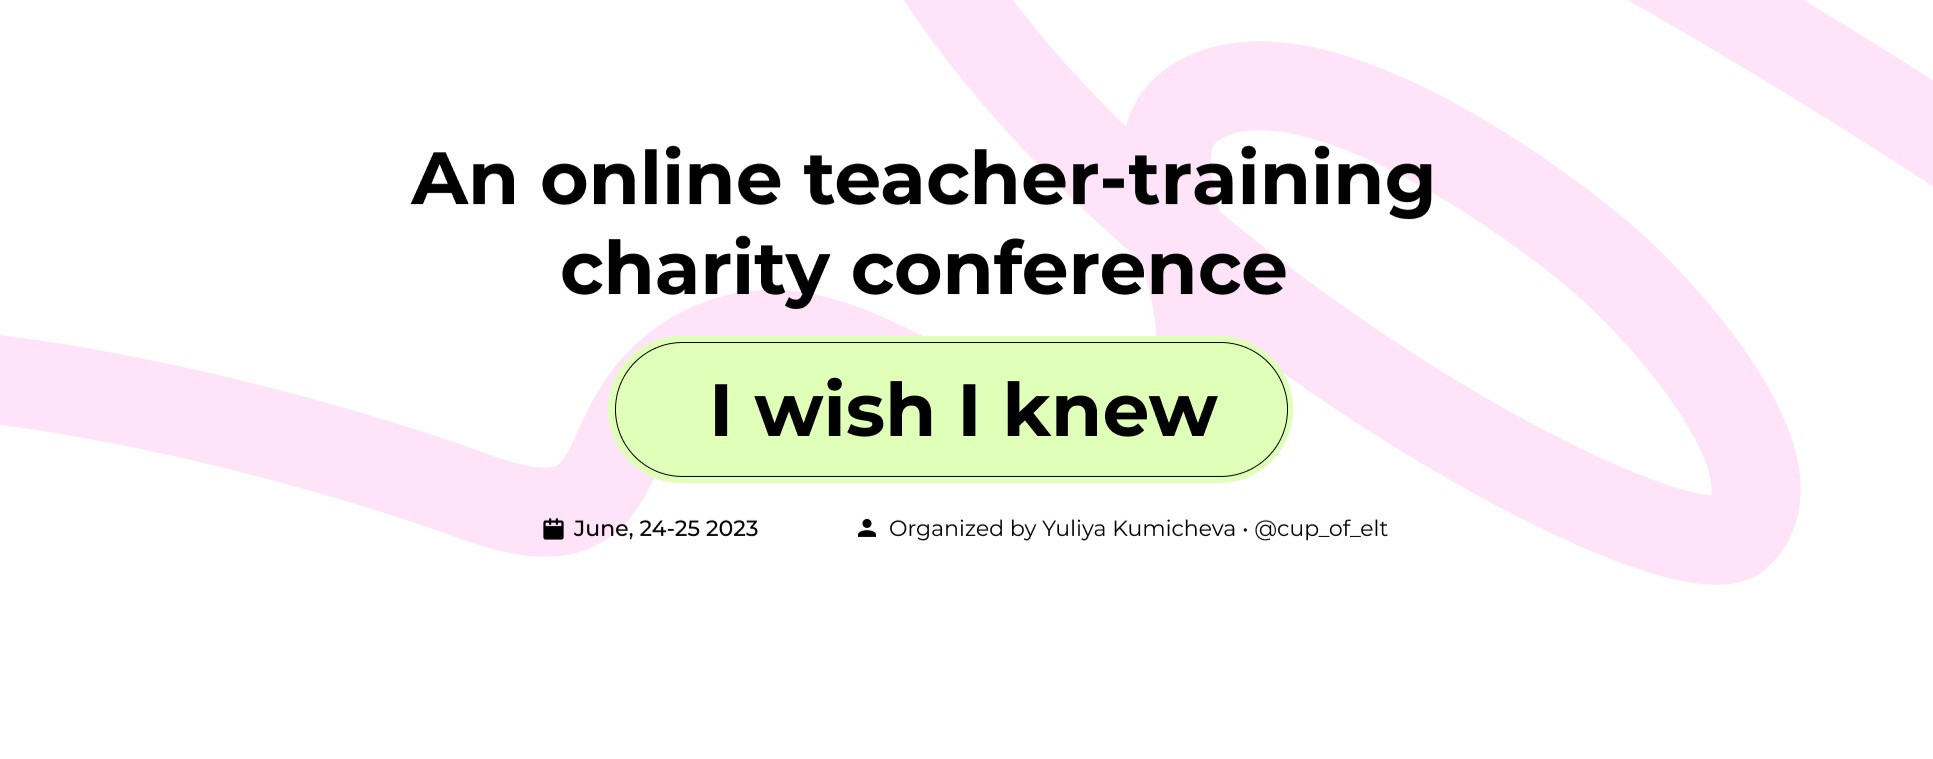 Юлия Кумичева: "I wish I knew": ELT teacher training conference